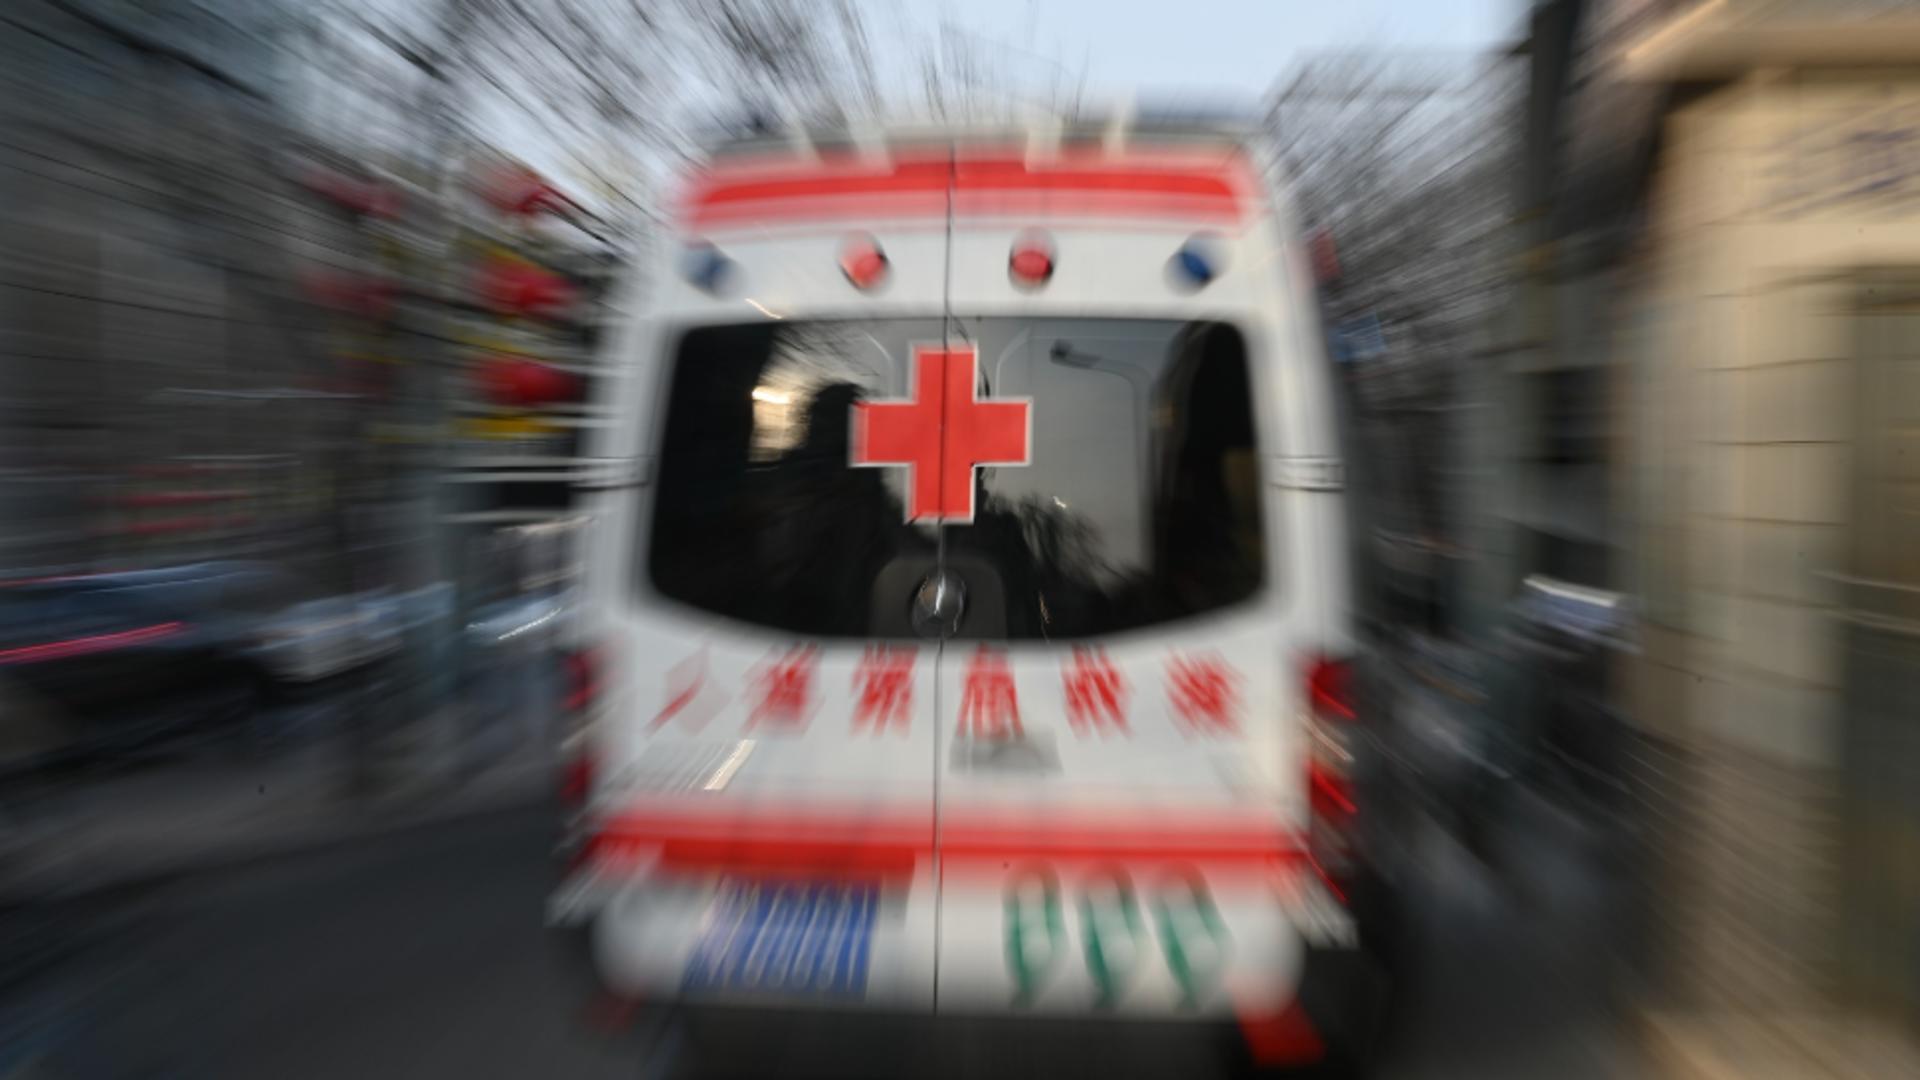 Cel puţin doi morţi şi 23 de răniţi într-un atac cu cutiţul într-un spital din China. Alertă maximă în rândul autorităților